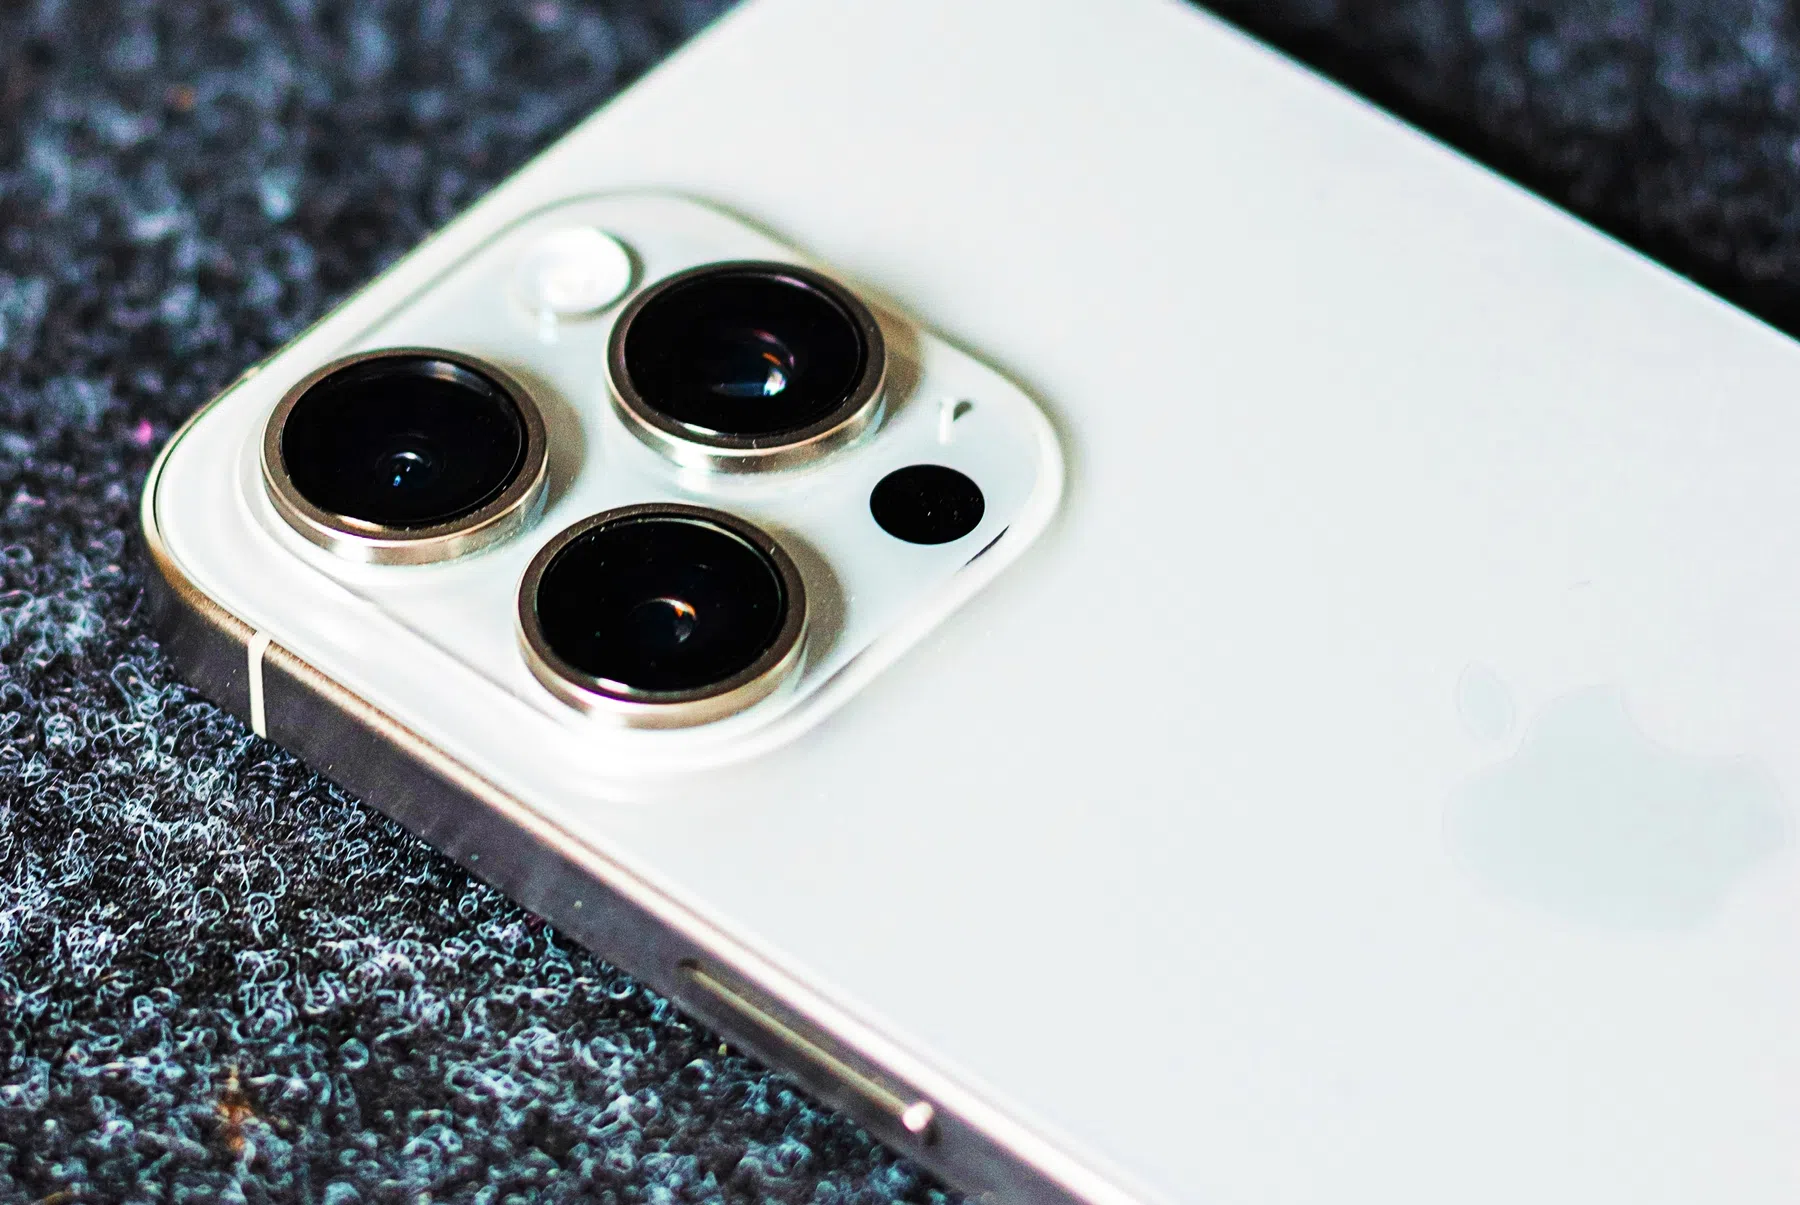 Huawei bezorgt Apple nóg meer hoofdpijn: verkoop iPhone ingestort